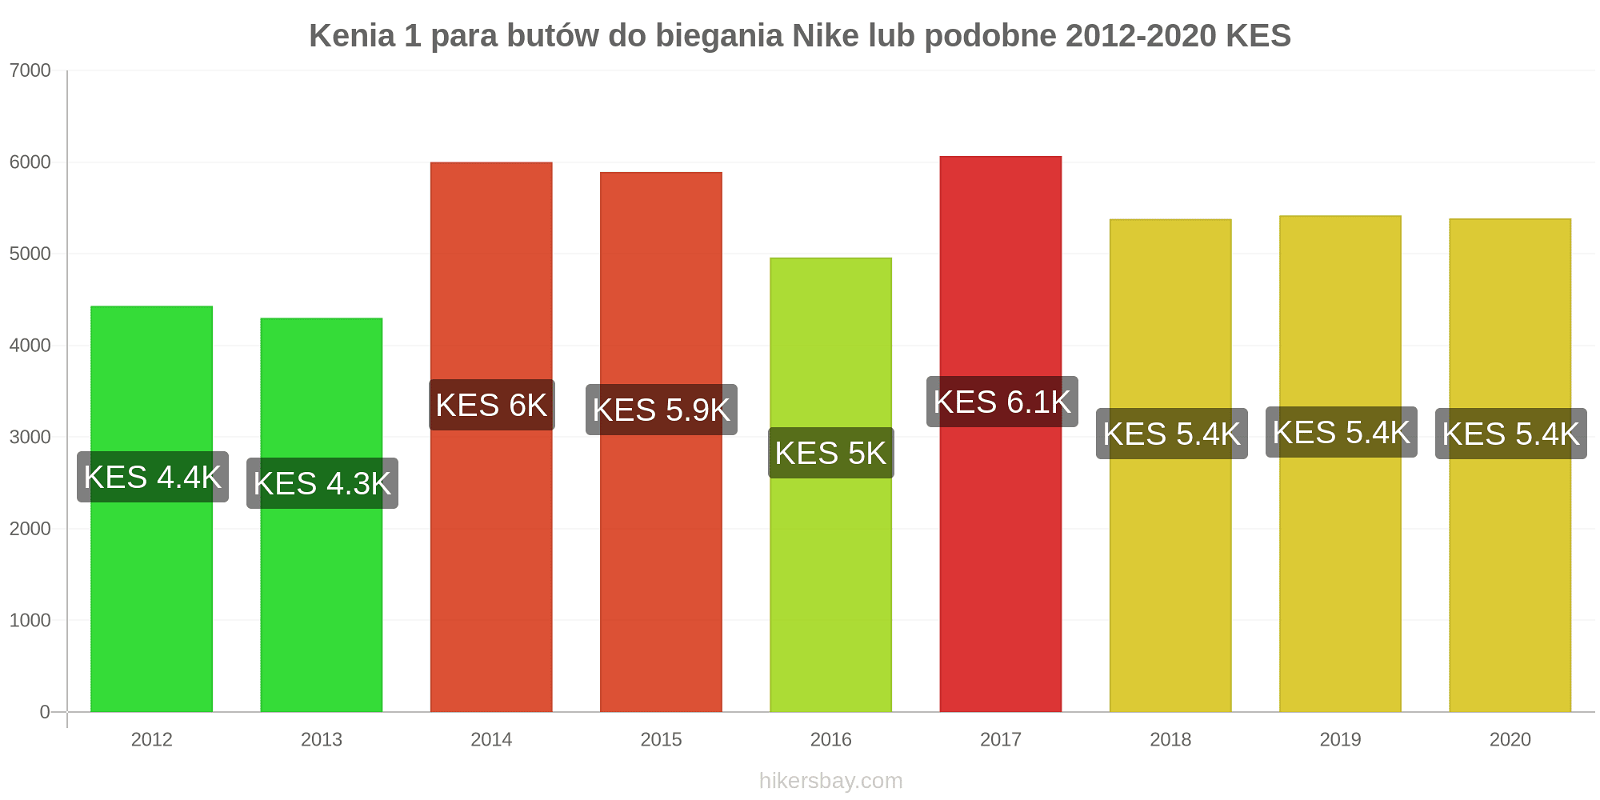 Kenia zmiany cen 1 para butów do biegania Nike lub podobne hikersbay.com